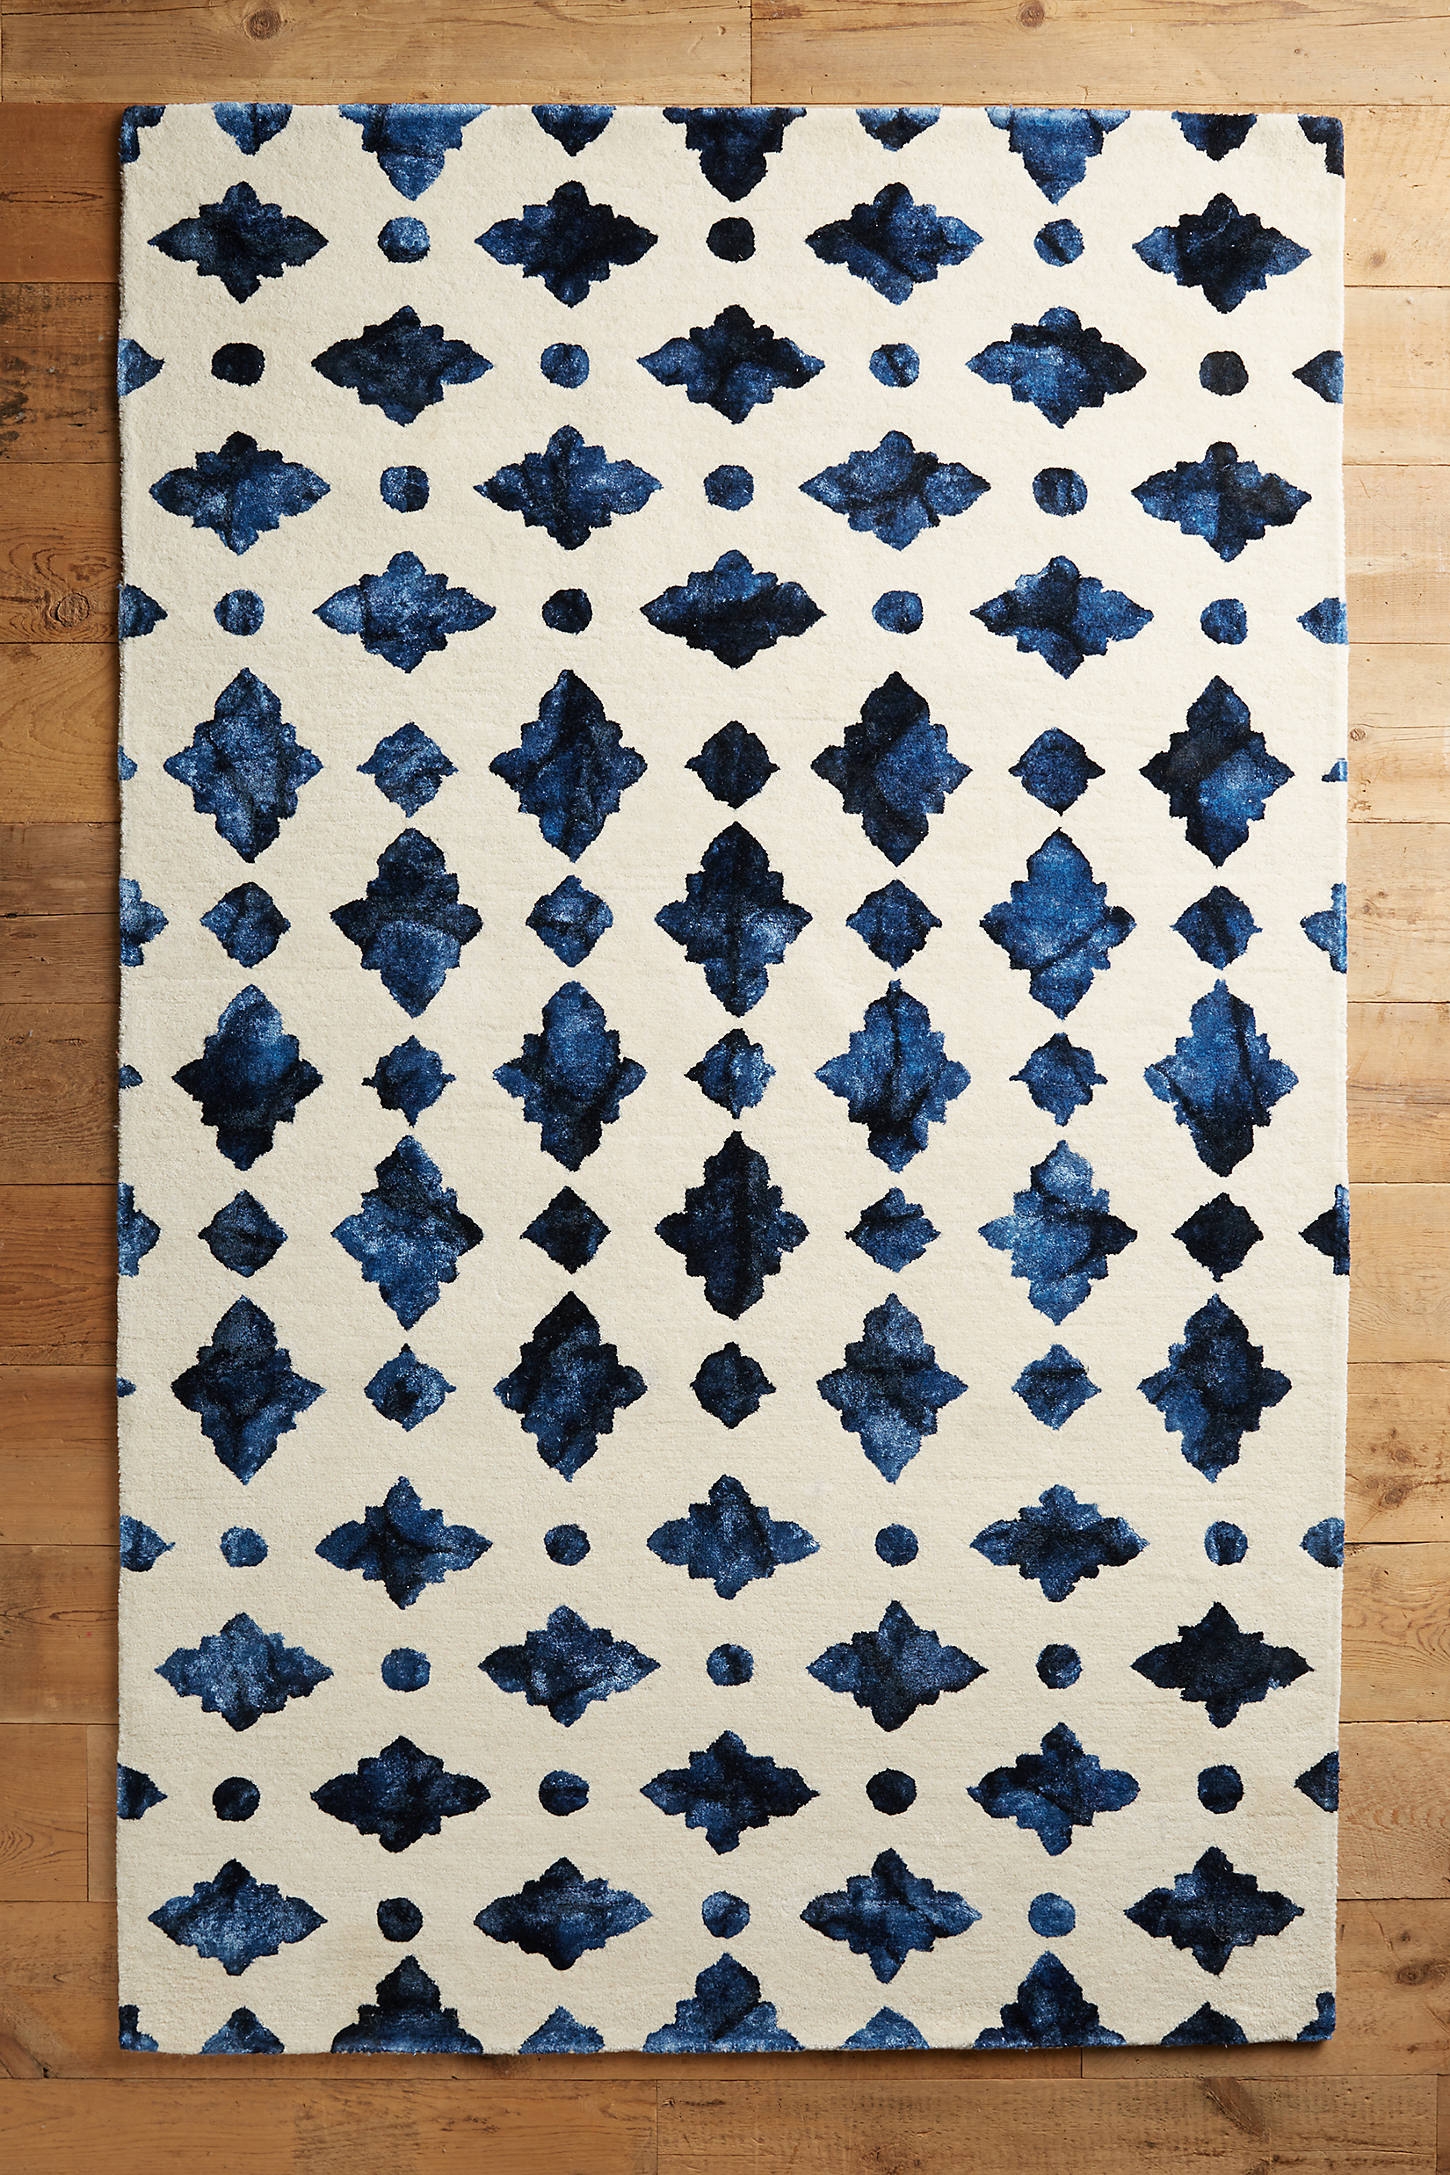 Moroccan Tile Rug, 5' x 8' - Image 0